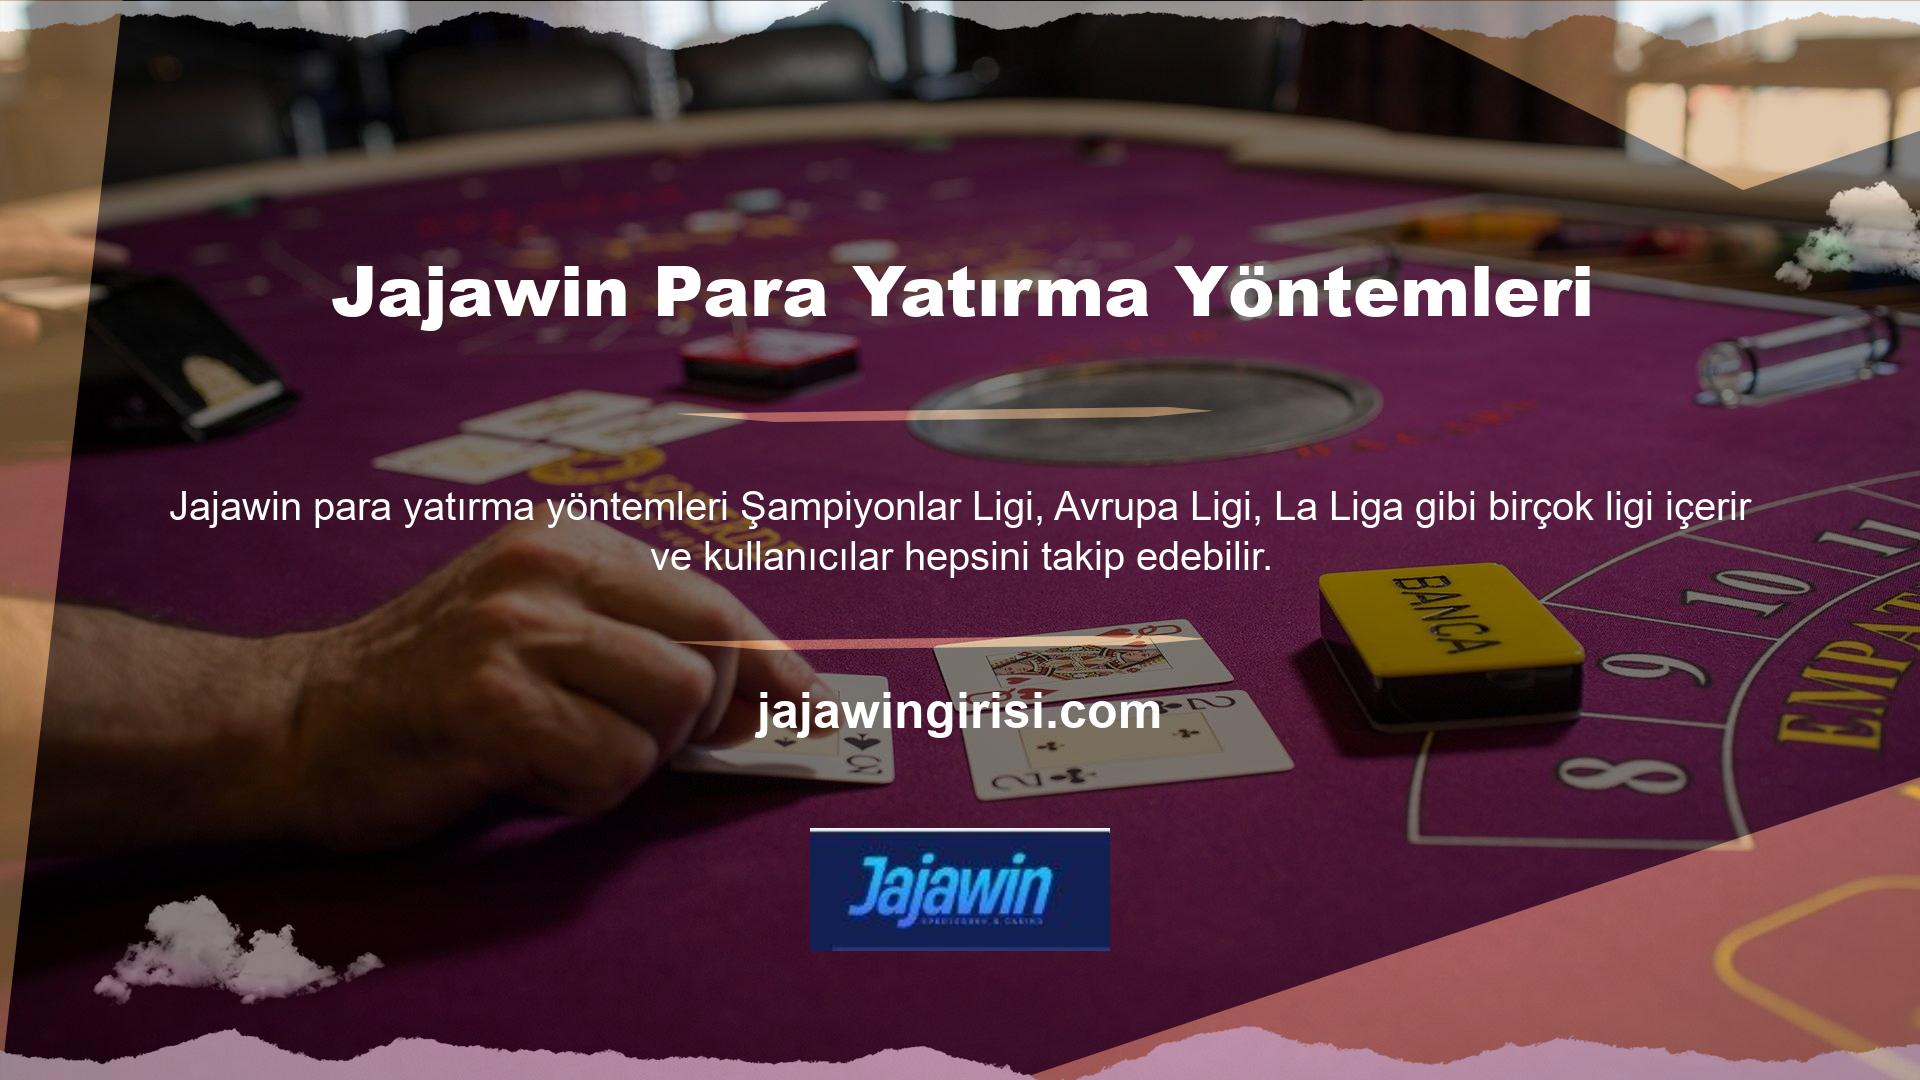 Jajawin para yatırma yöntemleri sayesinde kullanıcılar üye olduktan sonra para biriktirebilir ve sitedeki birçok oyun ve bahis türünden kazanç elde edebilir